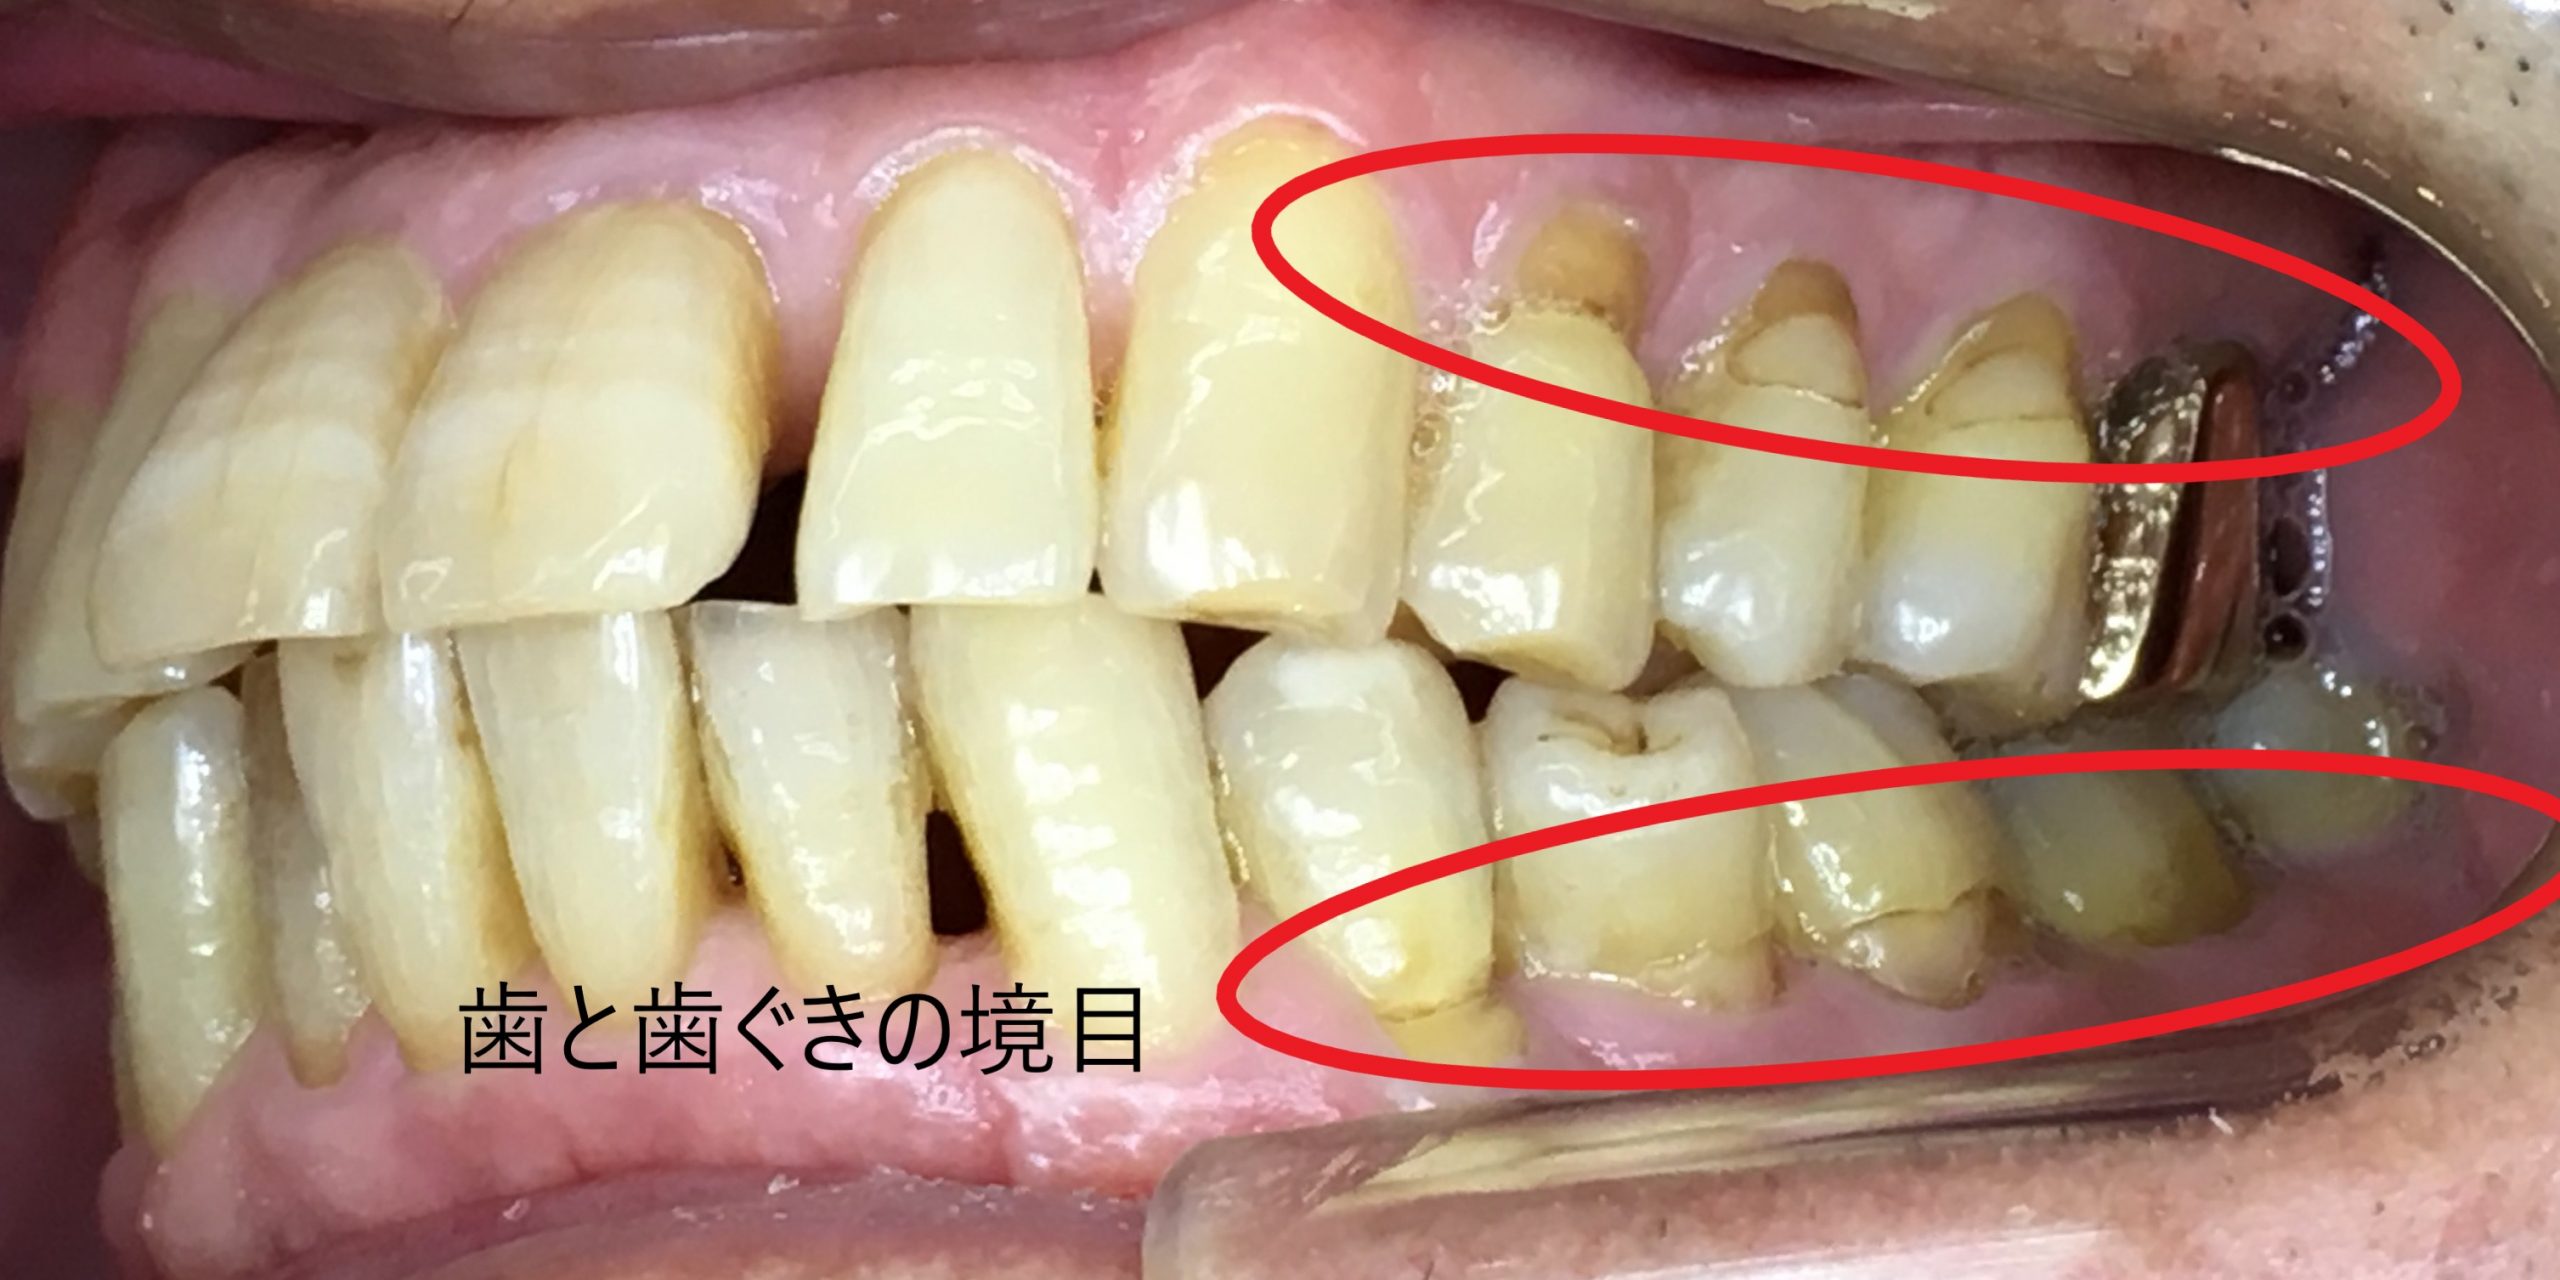 虫歯のリスク部位